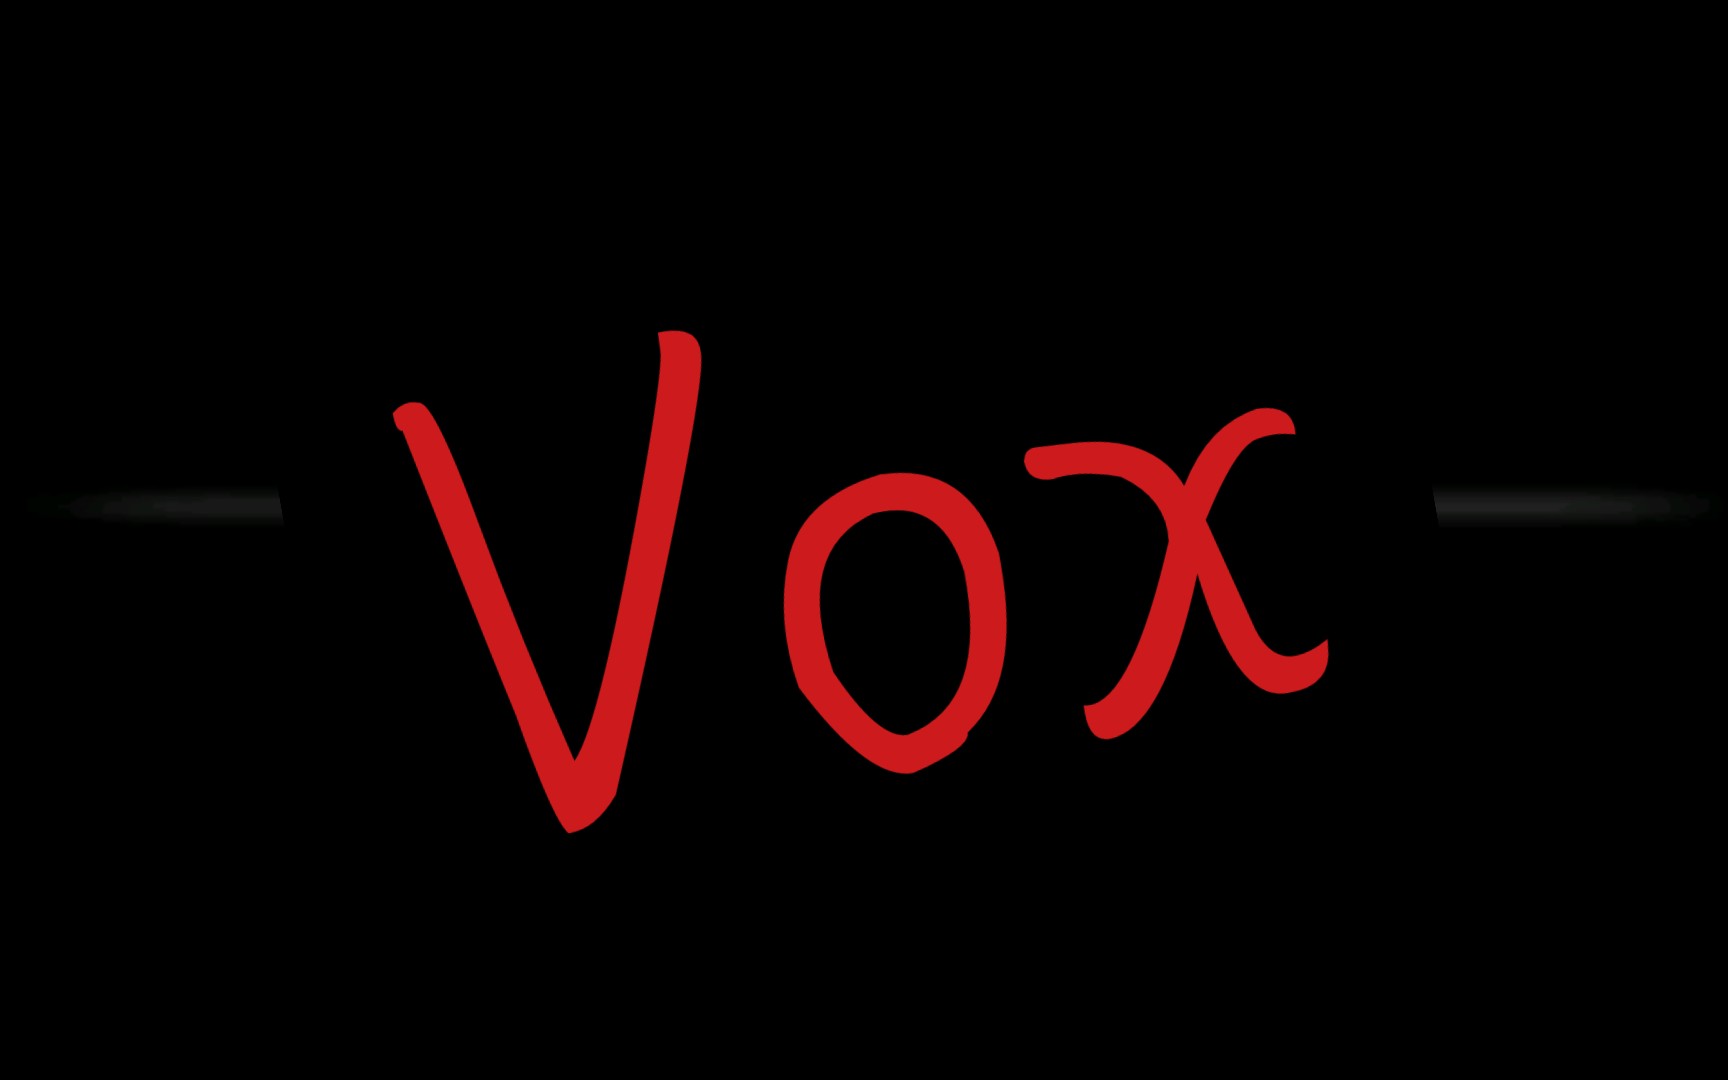 请某些人把Vox和Vox akuma分一下